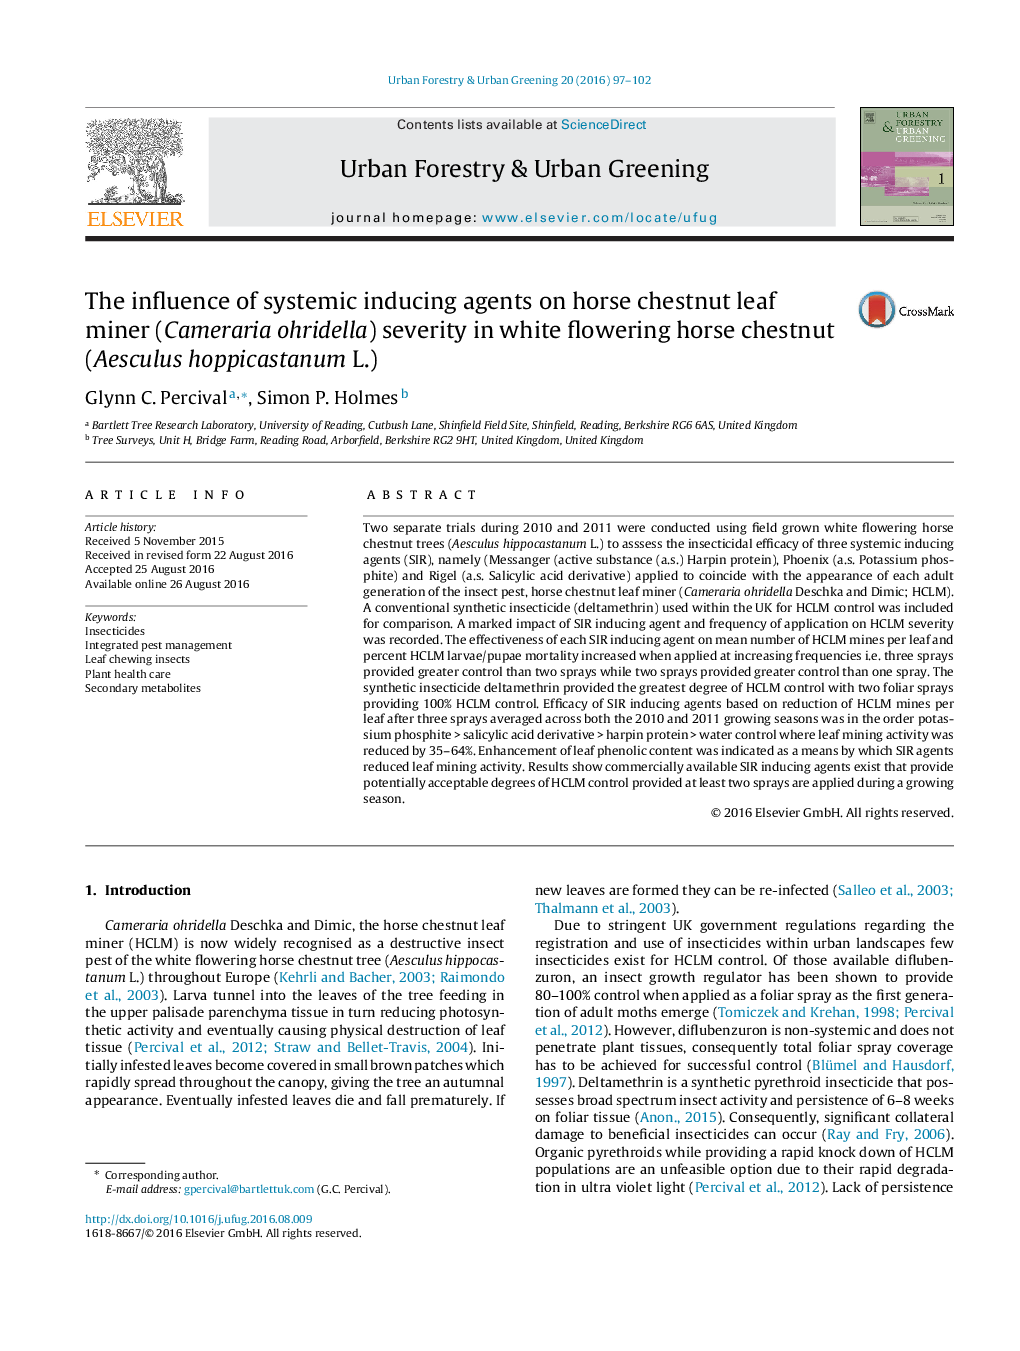 تأثير عوامل مؤثر بر فعاليت عصاره گياهان دارويي بر رشد قارچ شاه بلوط اسب (Cameraria ohridella) در شاه بلوط گل سوسن (Aesculus hoppicastanum L.)